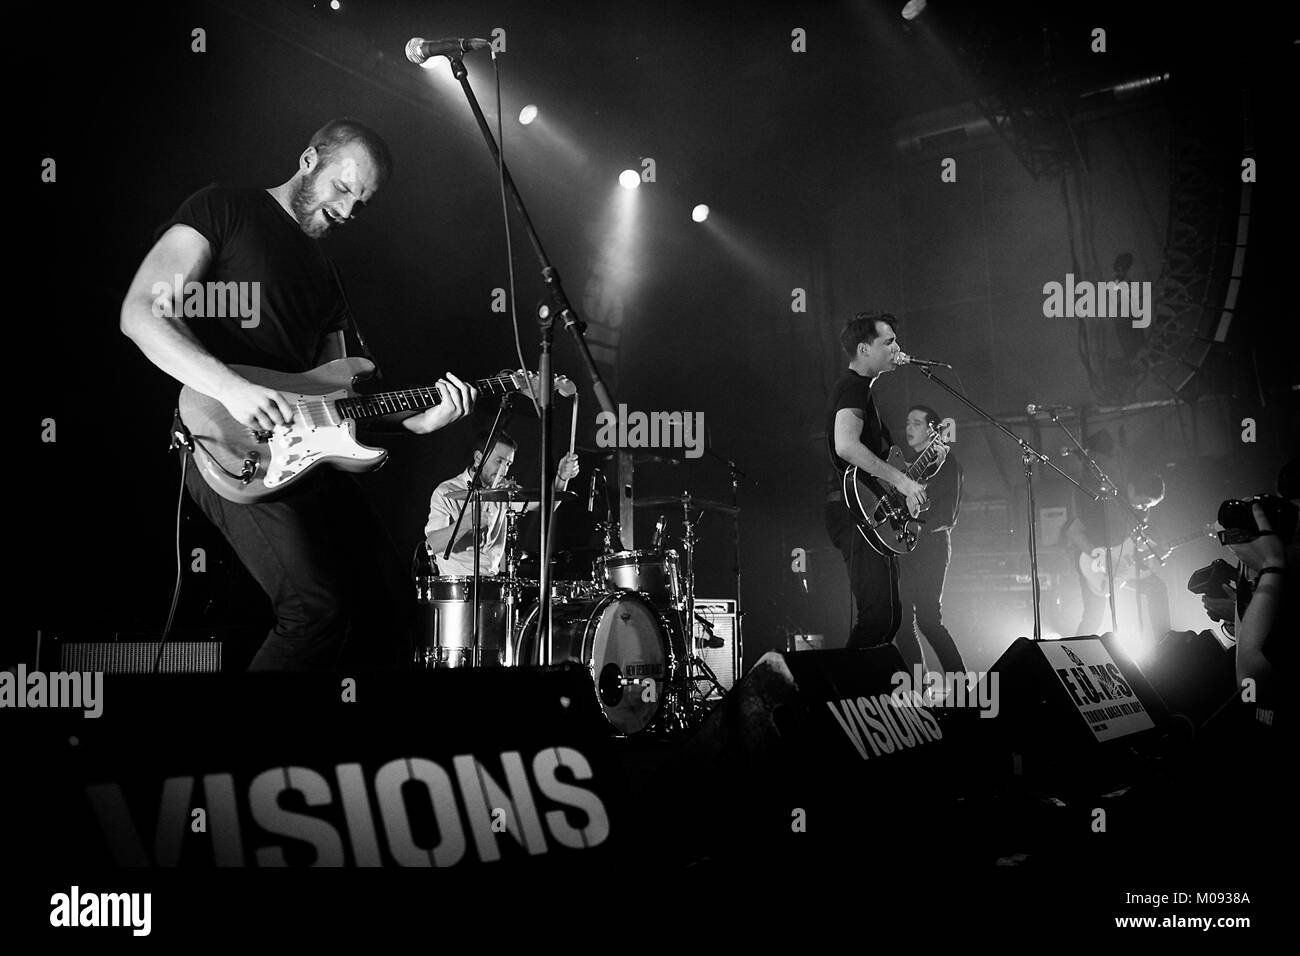 Le groupe de rock indépendant britannique New Desert Blues effectue un concert live de Das Freizeitzentrum ouest (FZW) à Dortmund. Allemagne, 05/10 2013. Banque D'Images